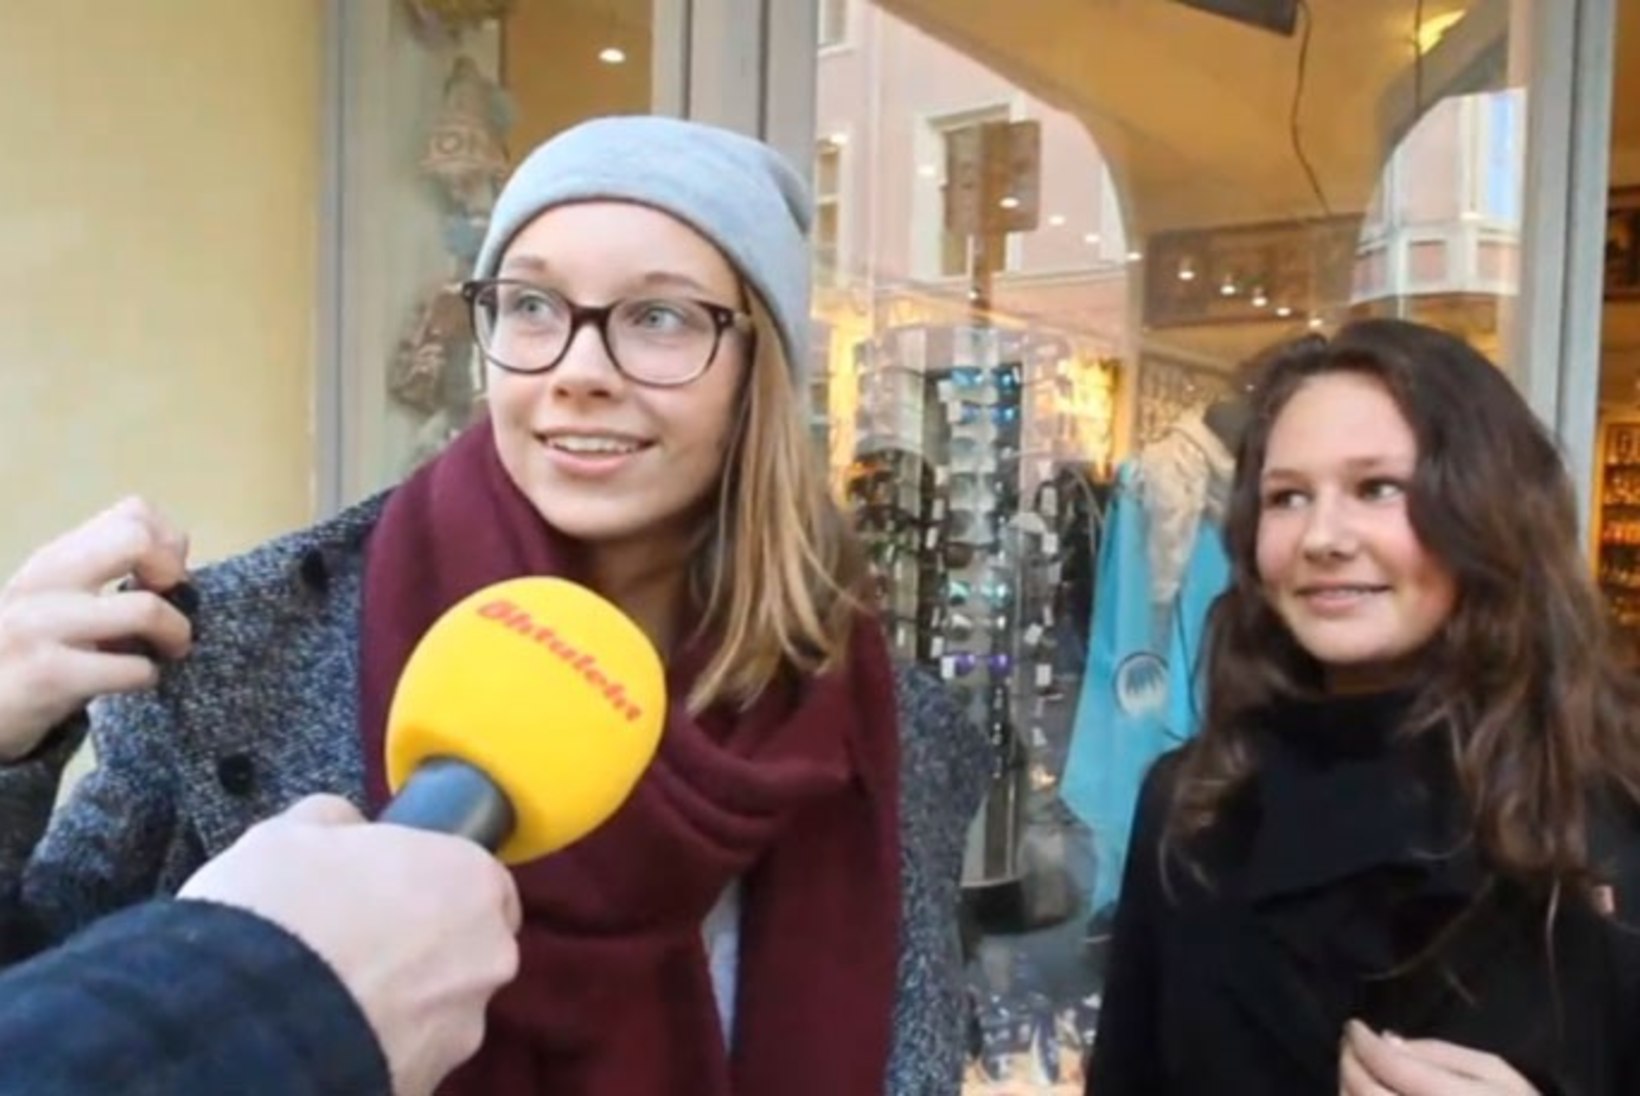 ÕHTULEHE VIDEO | TÄNAVAKÜSITLUS: mida arvavad eestlased uuest presidendist?